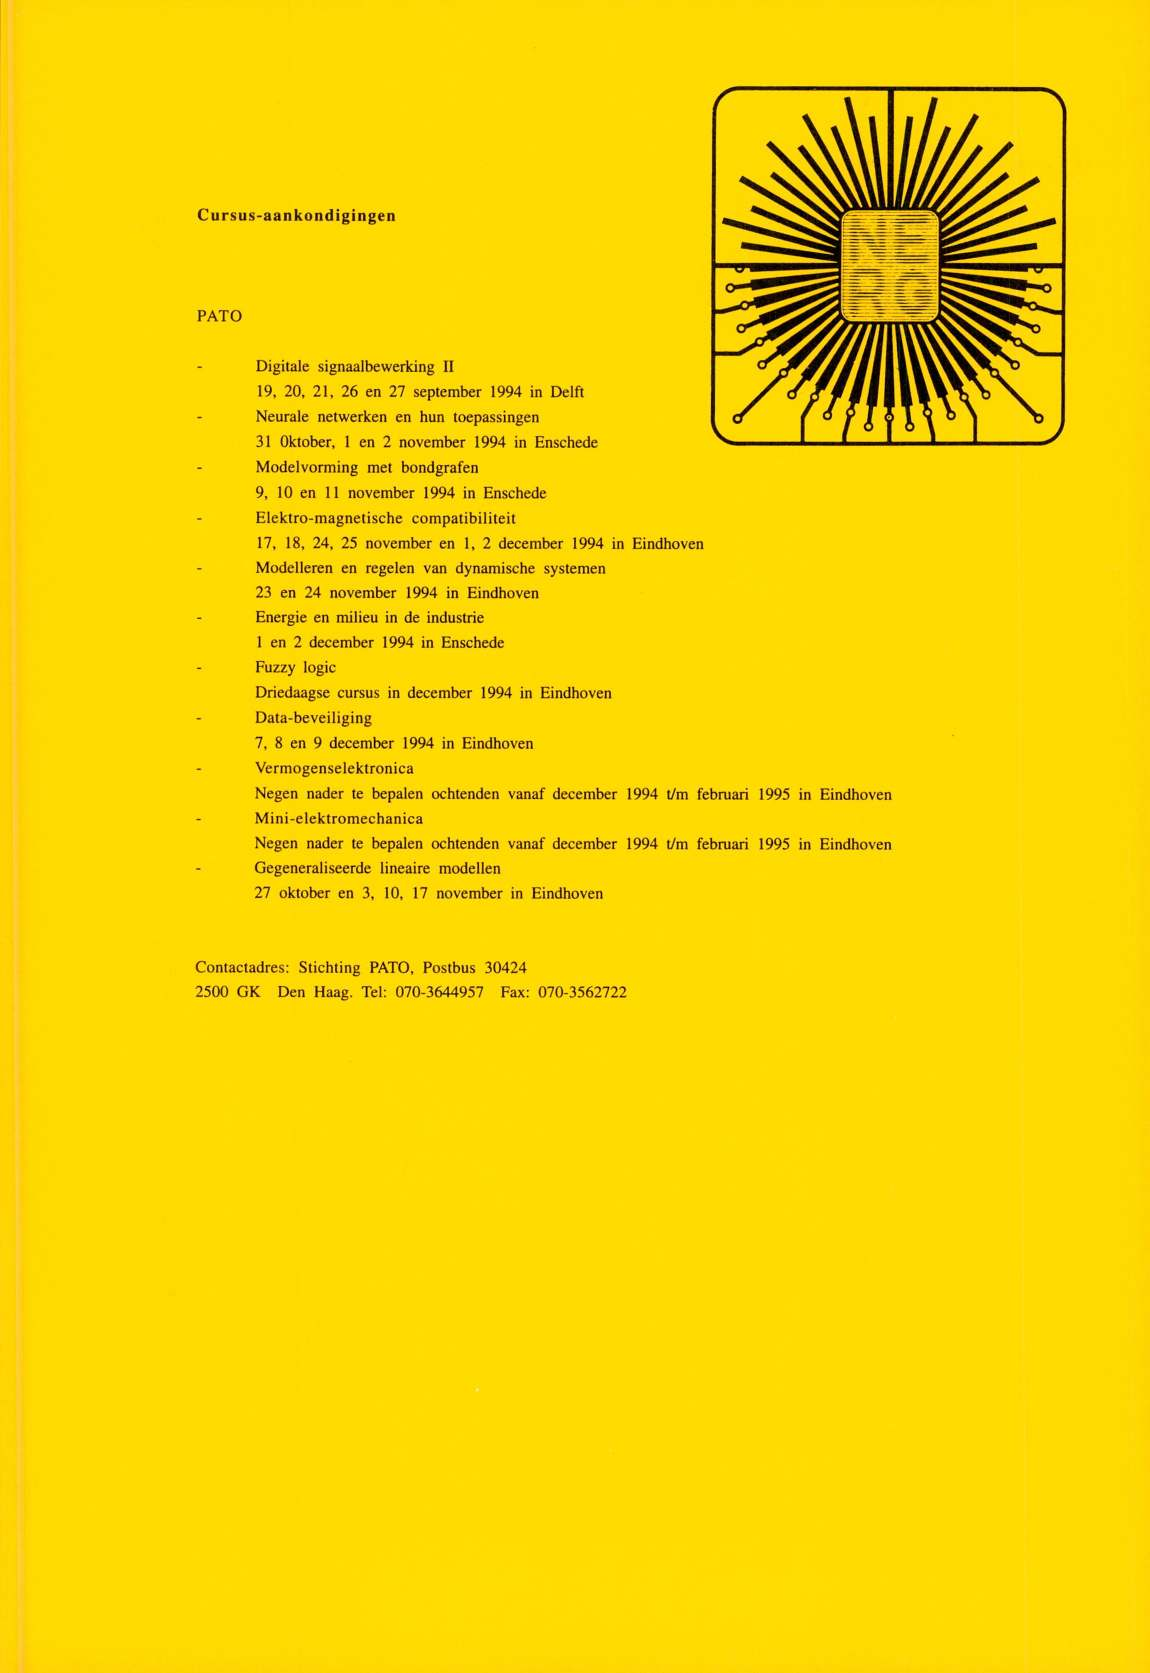 C ursus-aankondigingen PATO Digitale signaalbewerking II 19, 20, 21, 26 en 27 september 1994 in Delft Neurale netwerken en hun toepassingen 31 Oktober, 1 en 2 november 1994 in Enschede Modelvorming